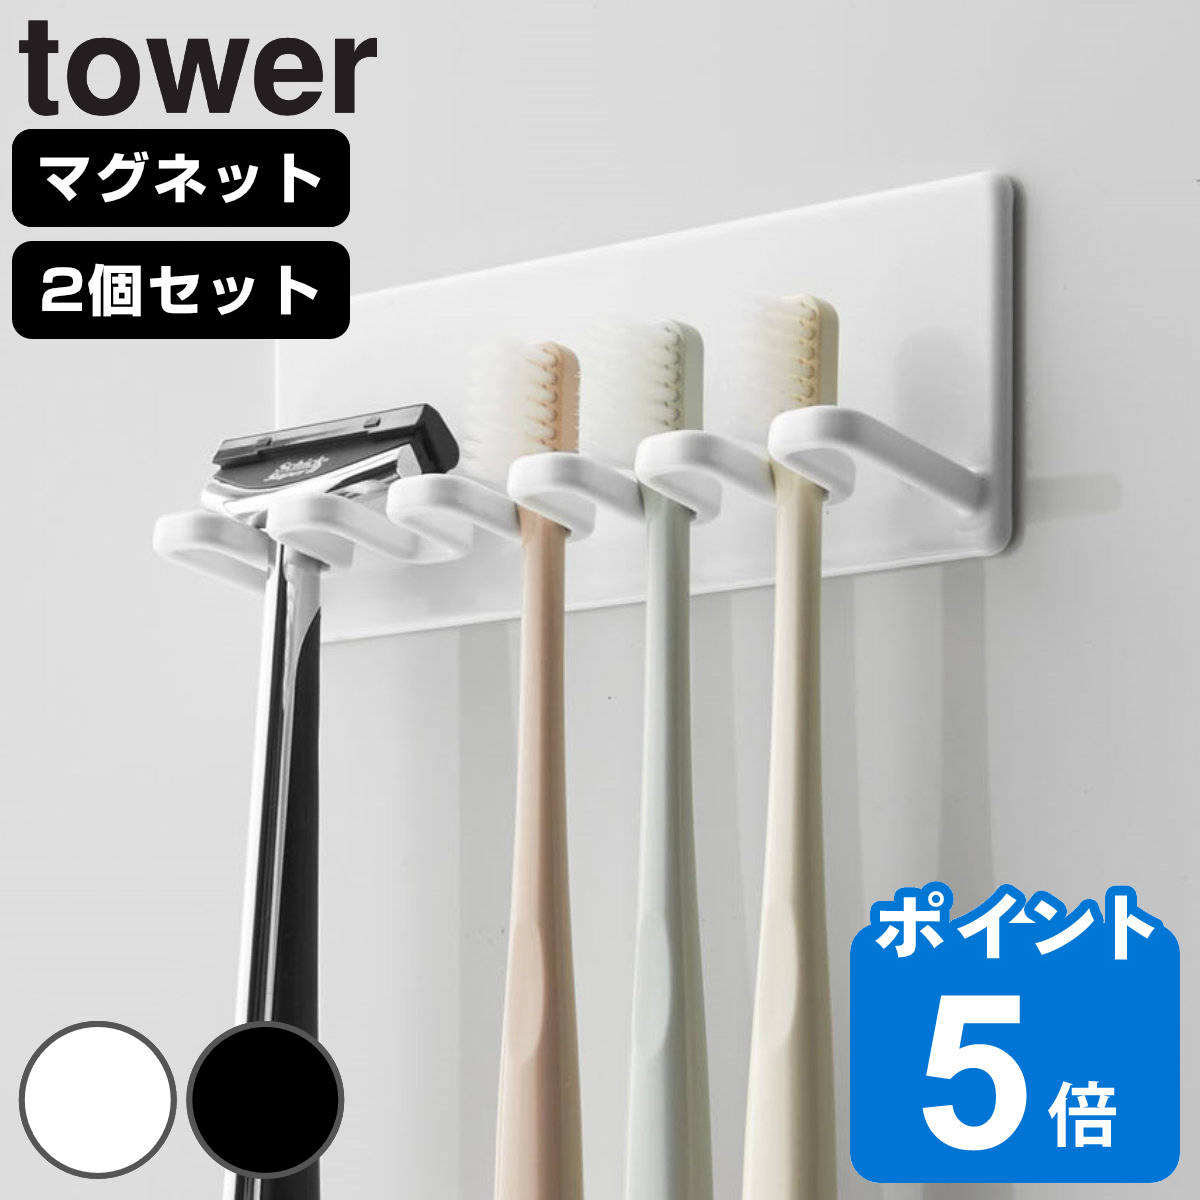 山崎実業 tower マグネットバスルーム歯ブラシホルダー 5連 タワー 同色2個セット